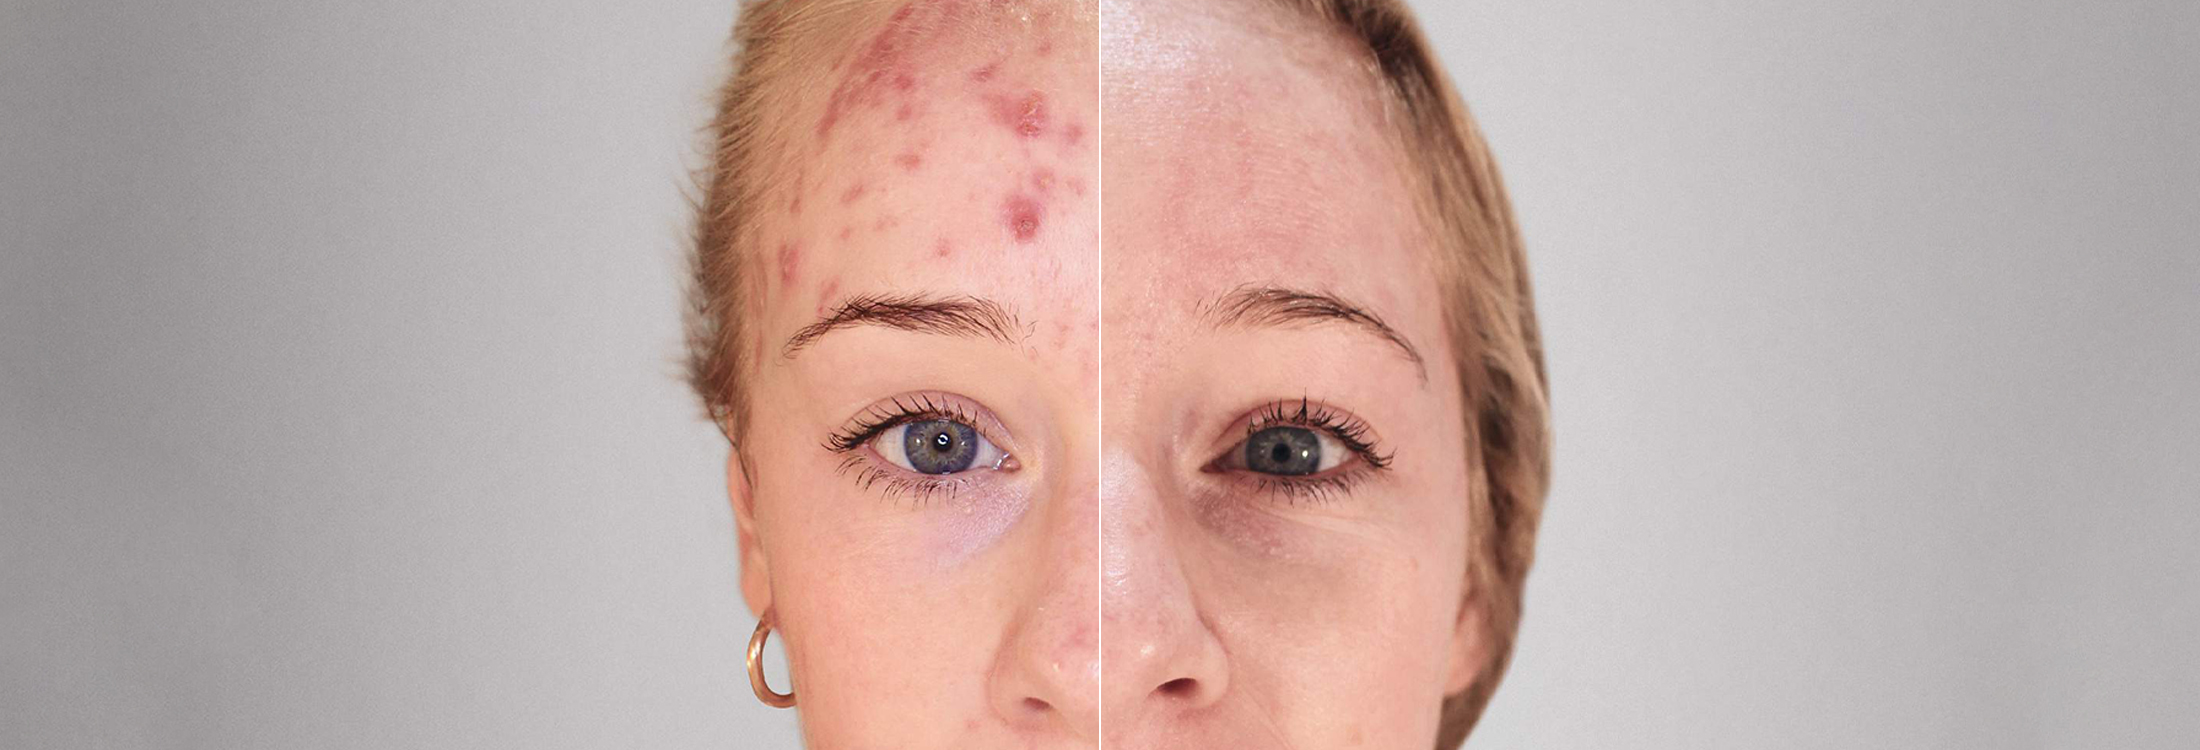 Kleresca Acne Treatment